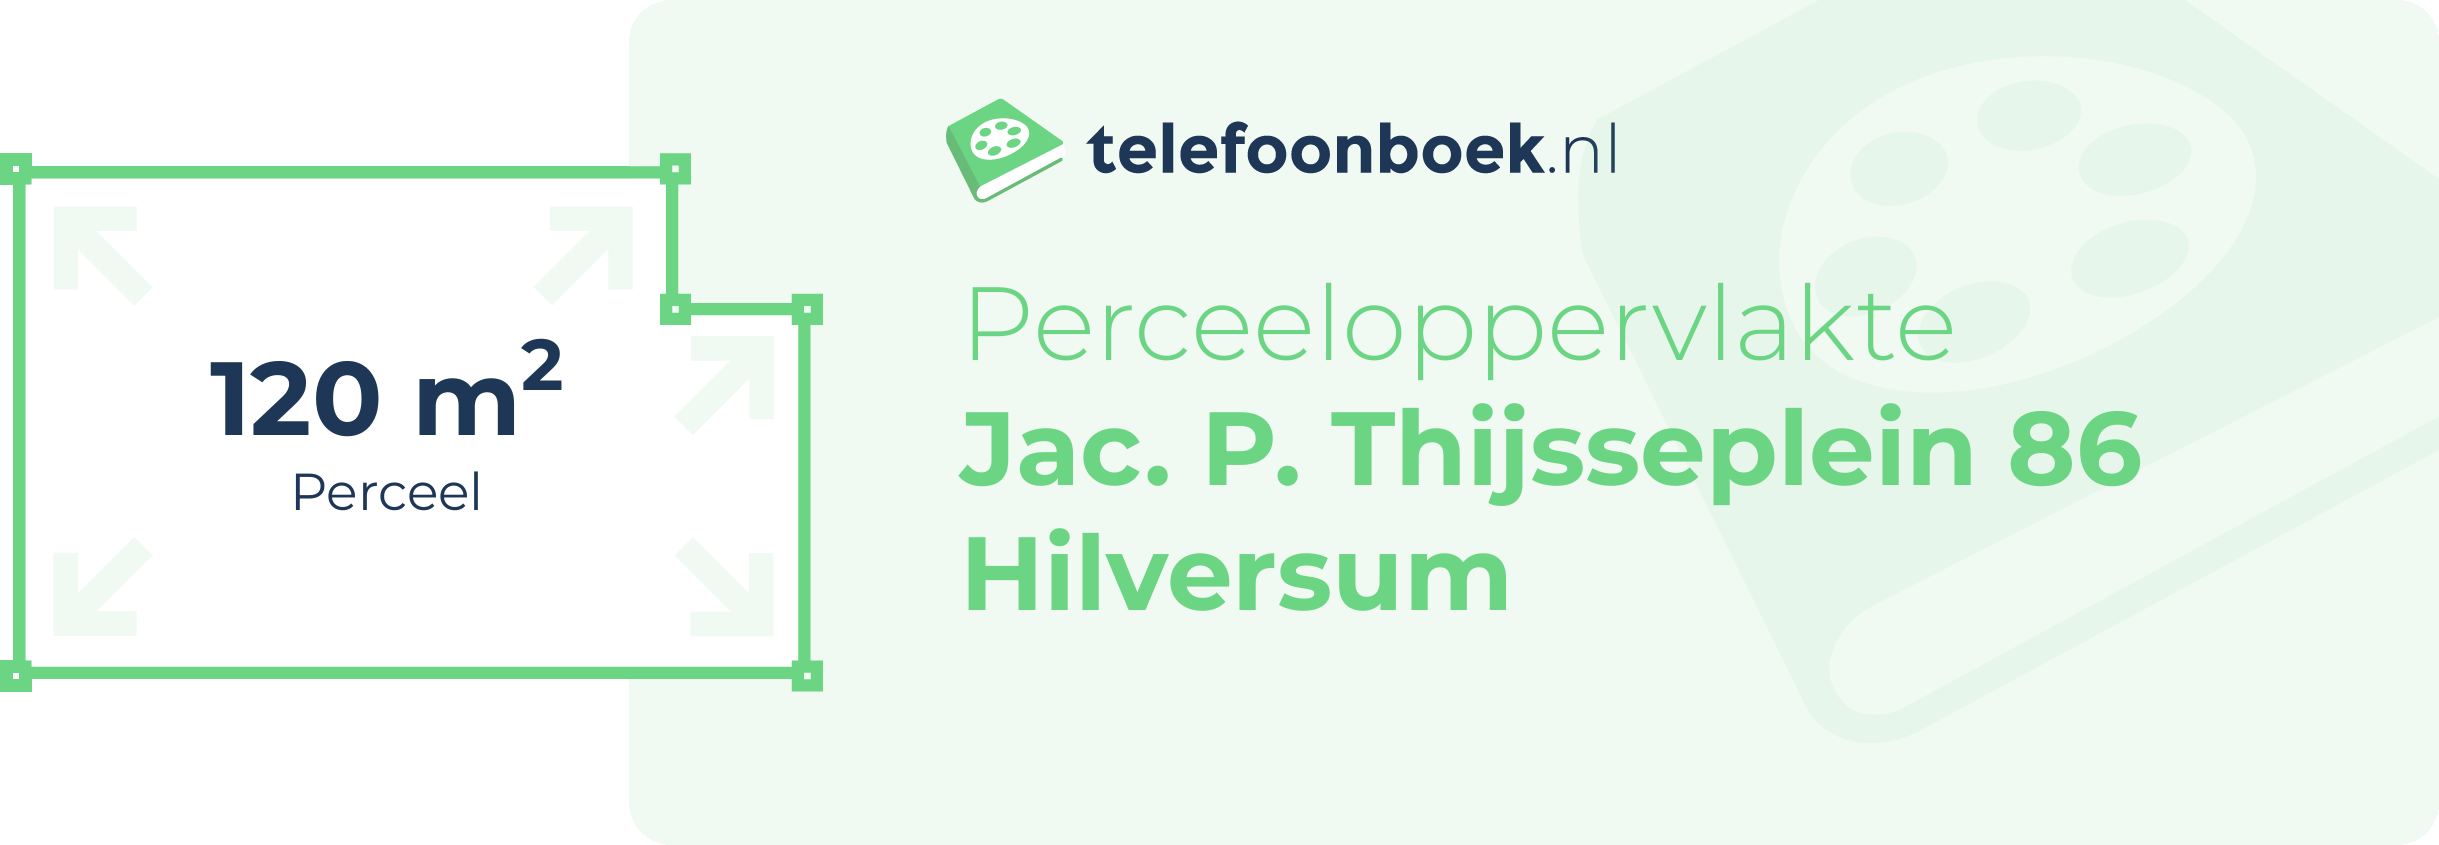 Perceeloppervlakte Jac. P. Thijsseplein 86 Hilversum